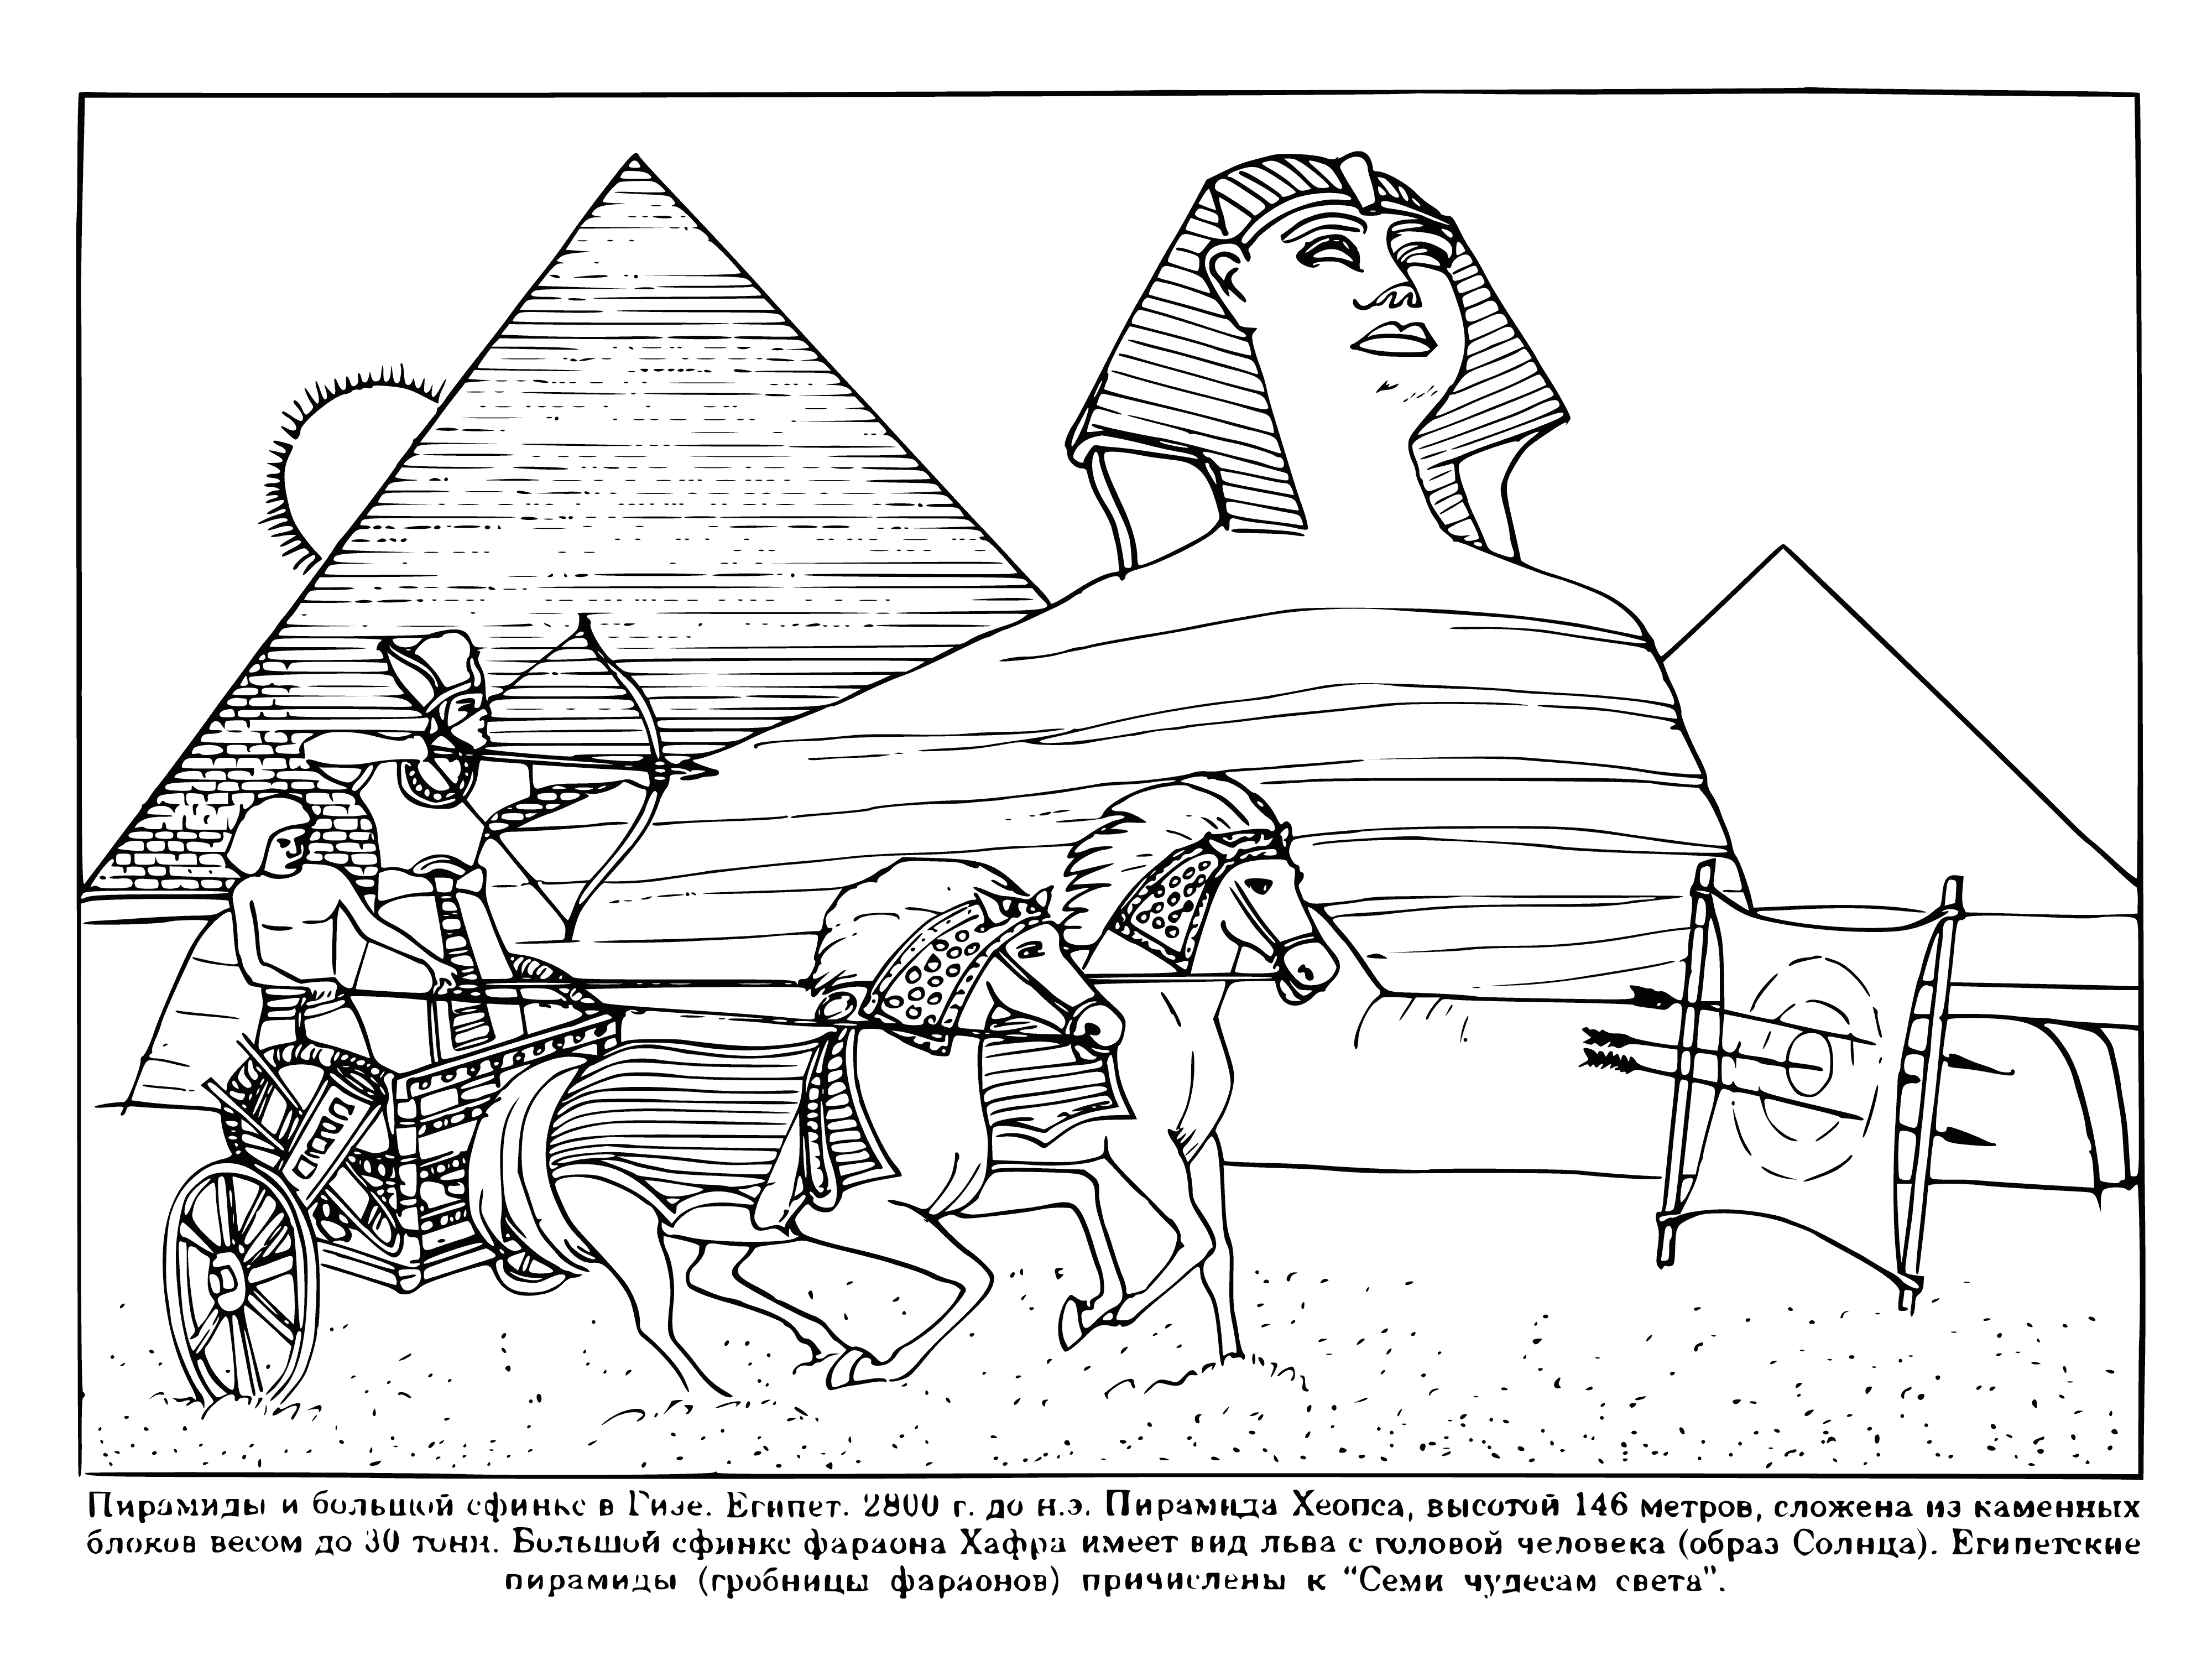 Egiptiese piramides inkleurbladsy